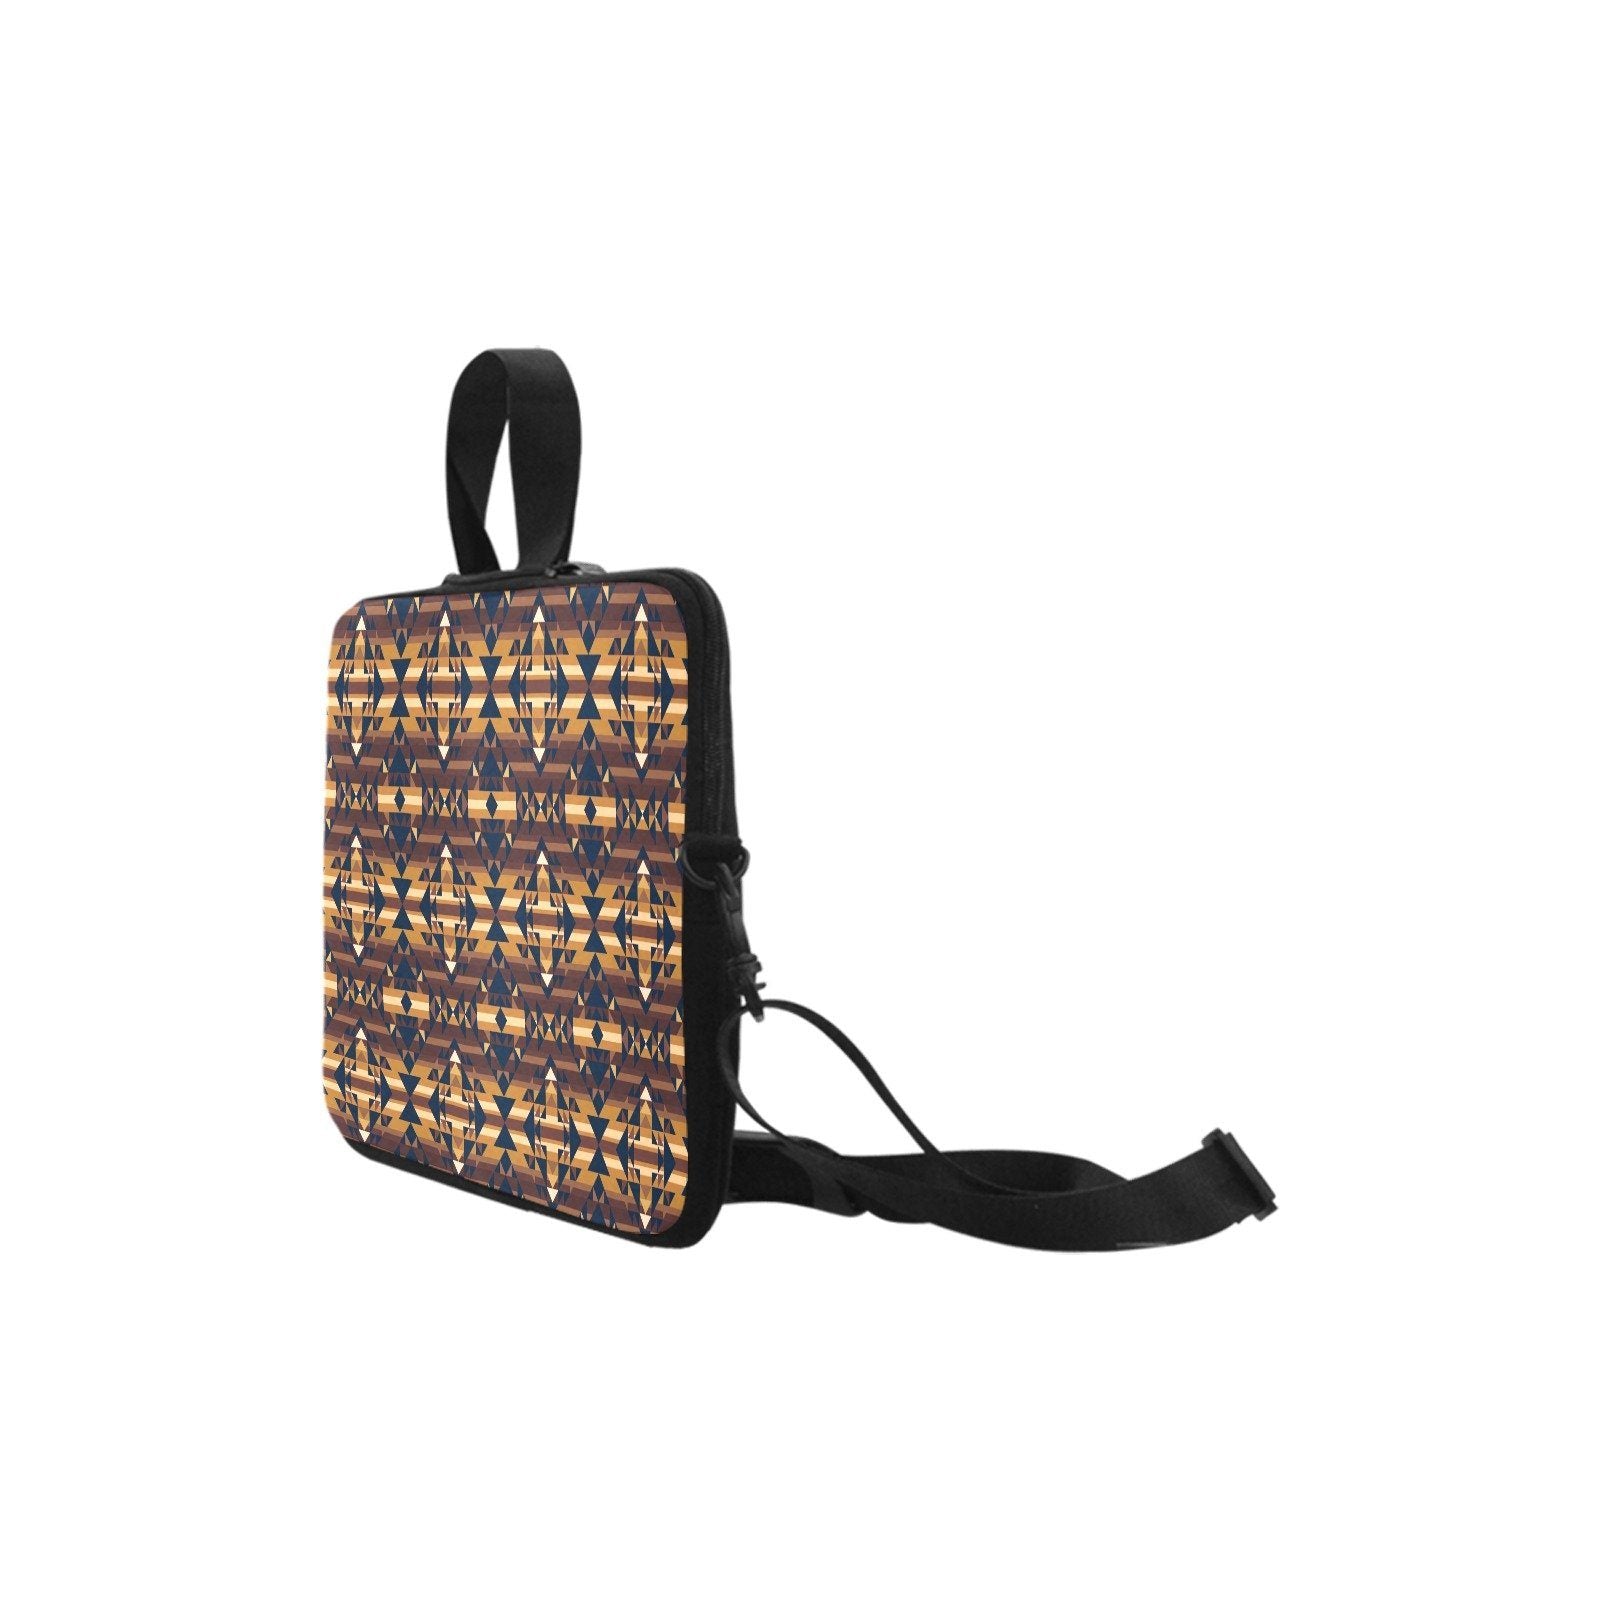 Marron Cloud Laptop Handbags 17" bag e-joyer 